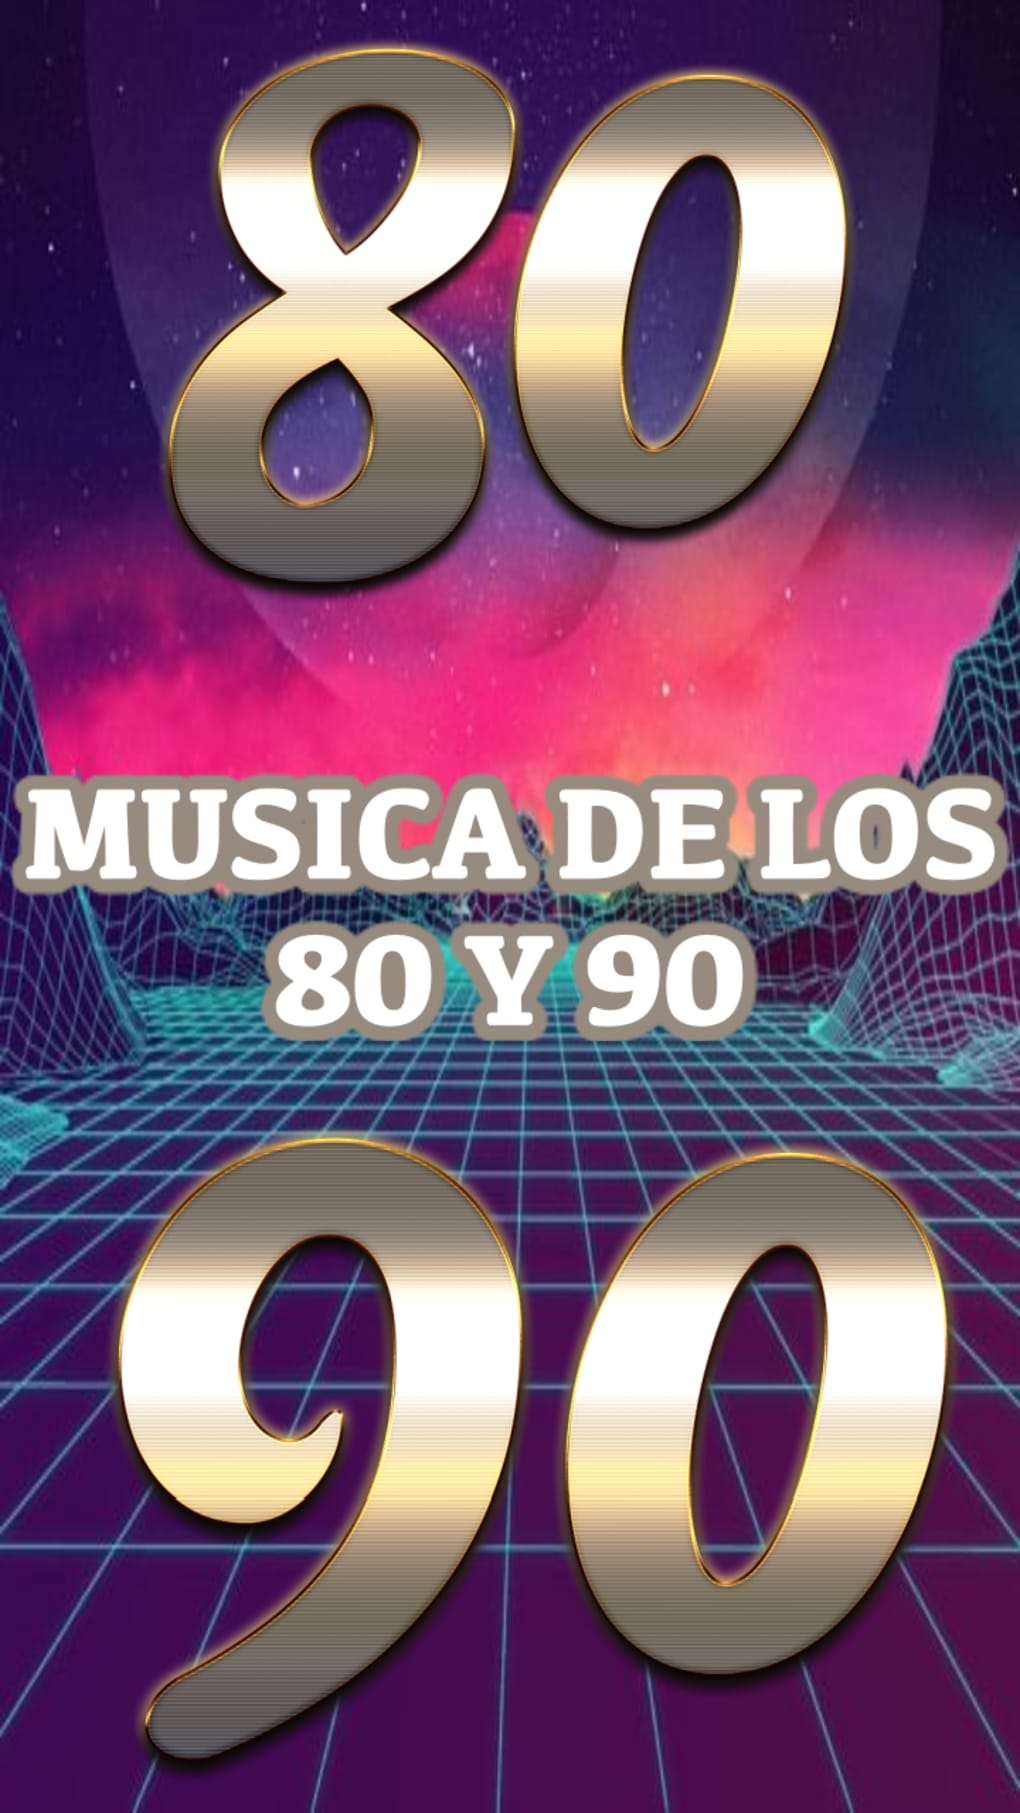 Música 80 90 para Android - Descargar